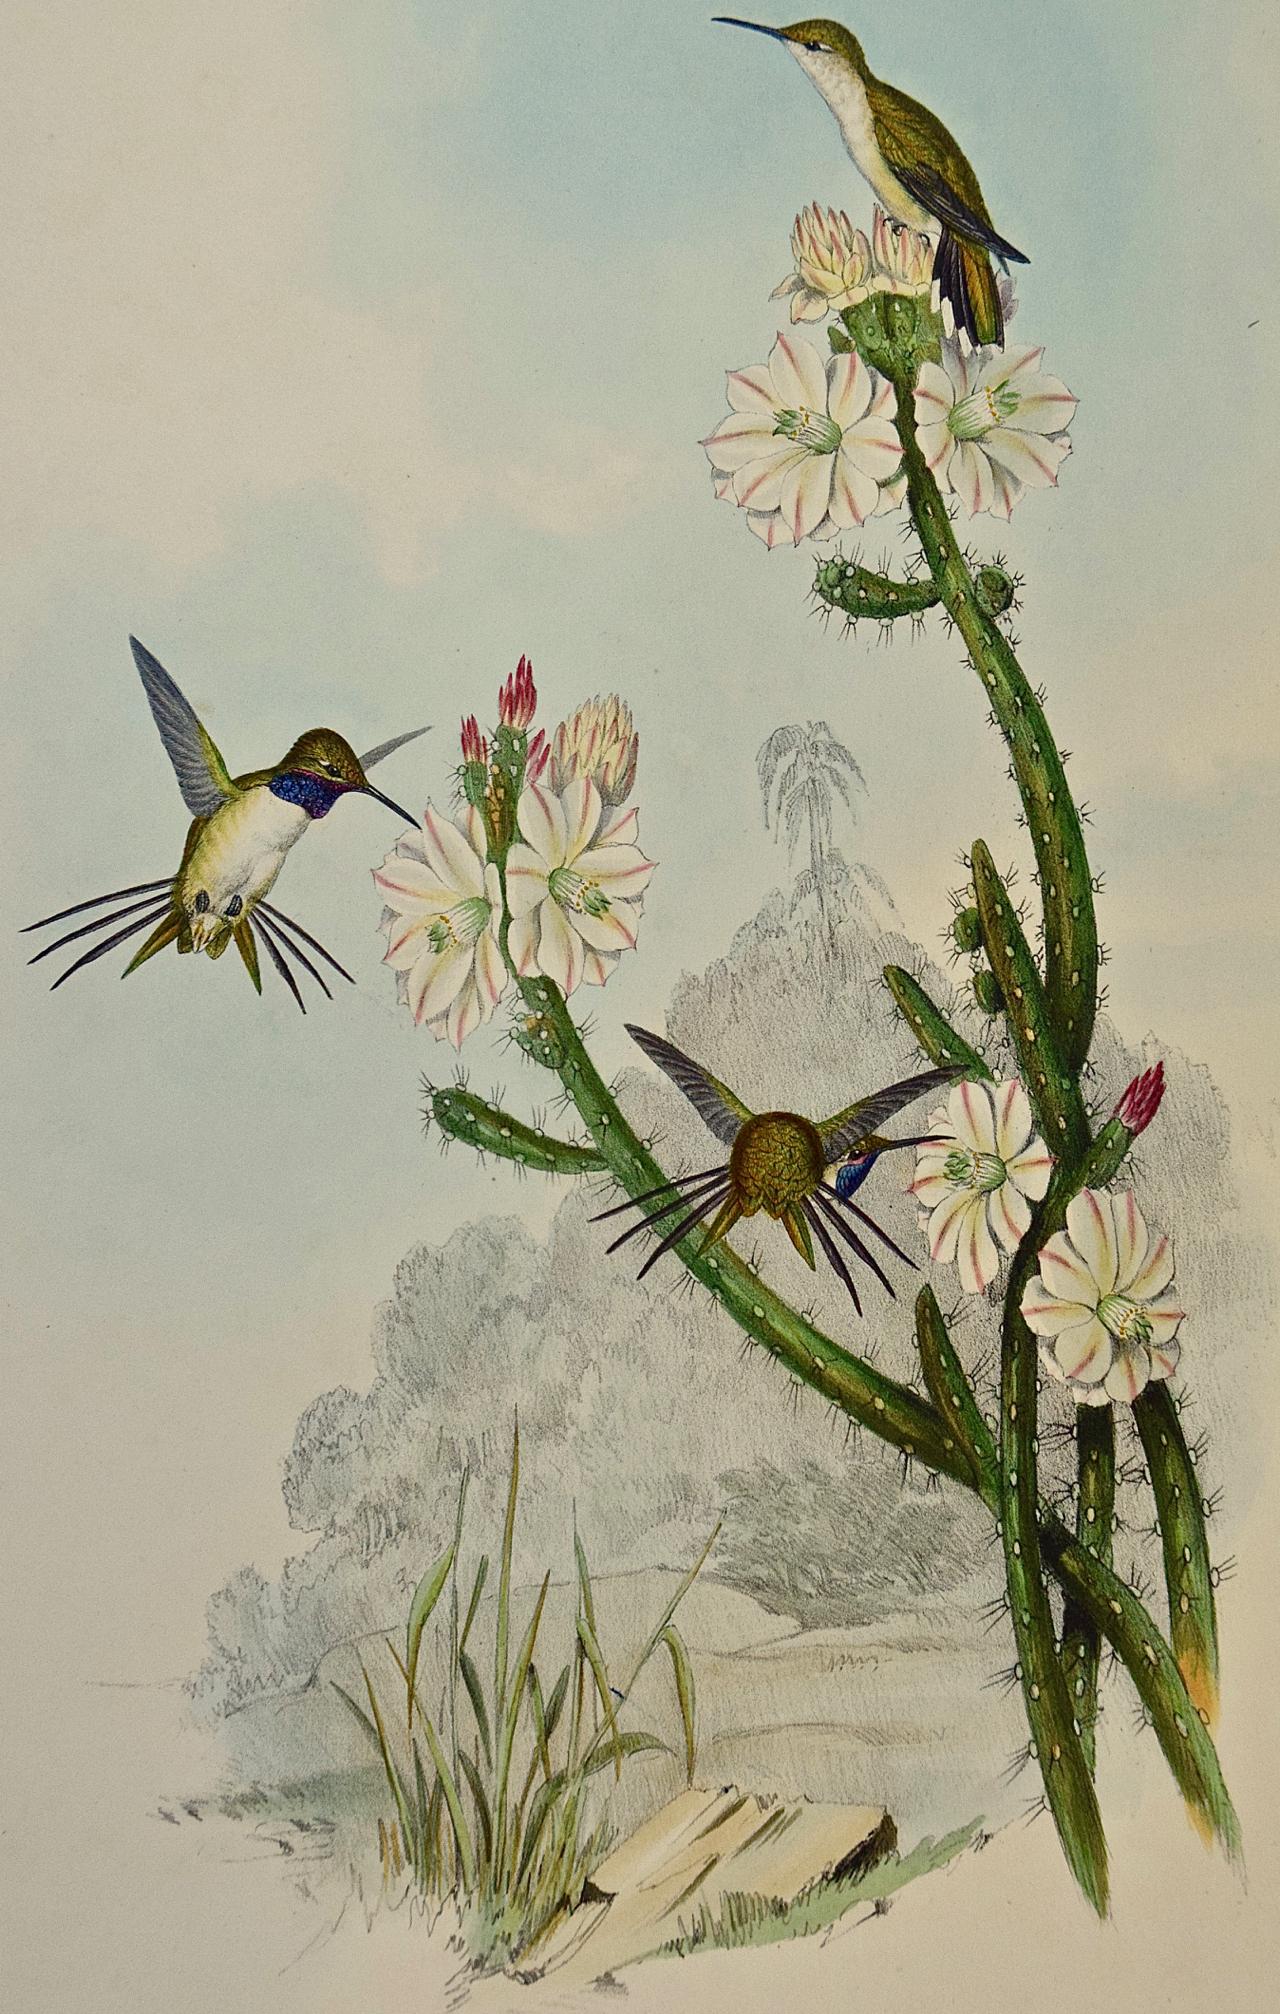 Étoiles d'hirondelles en bois de Yarrell : lithographie du 19e siècle colorée à la main - Print de John Gould and Henry Constantine Richter